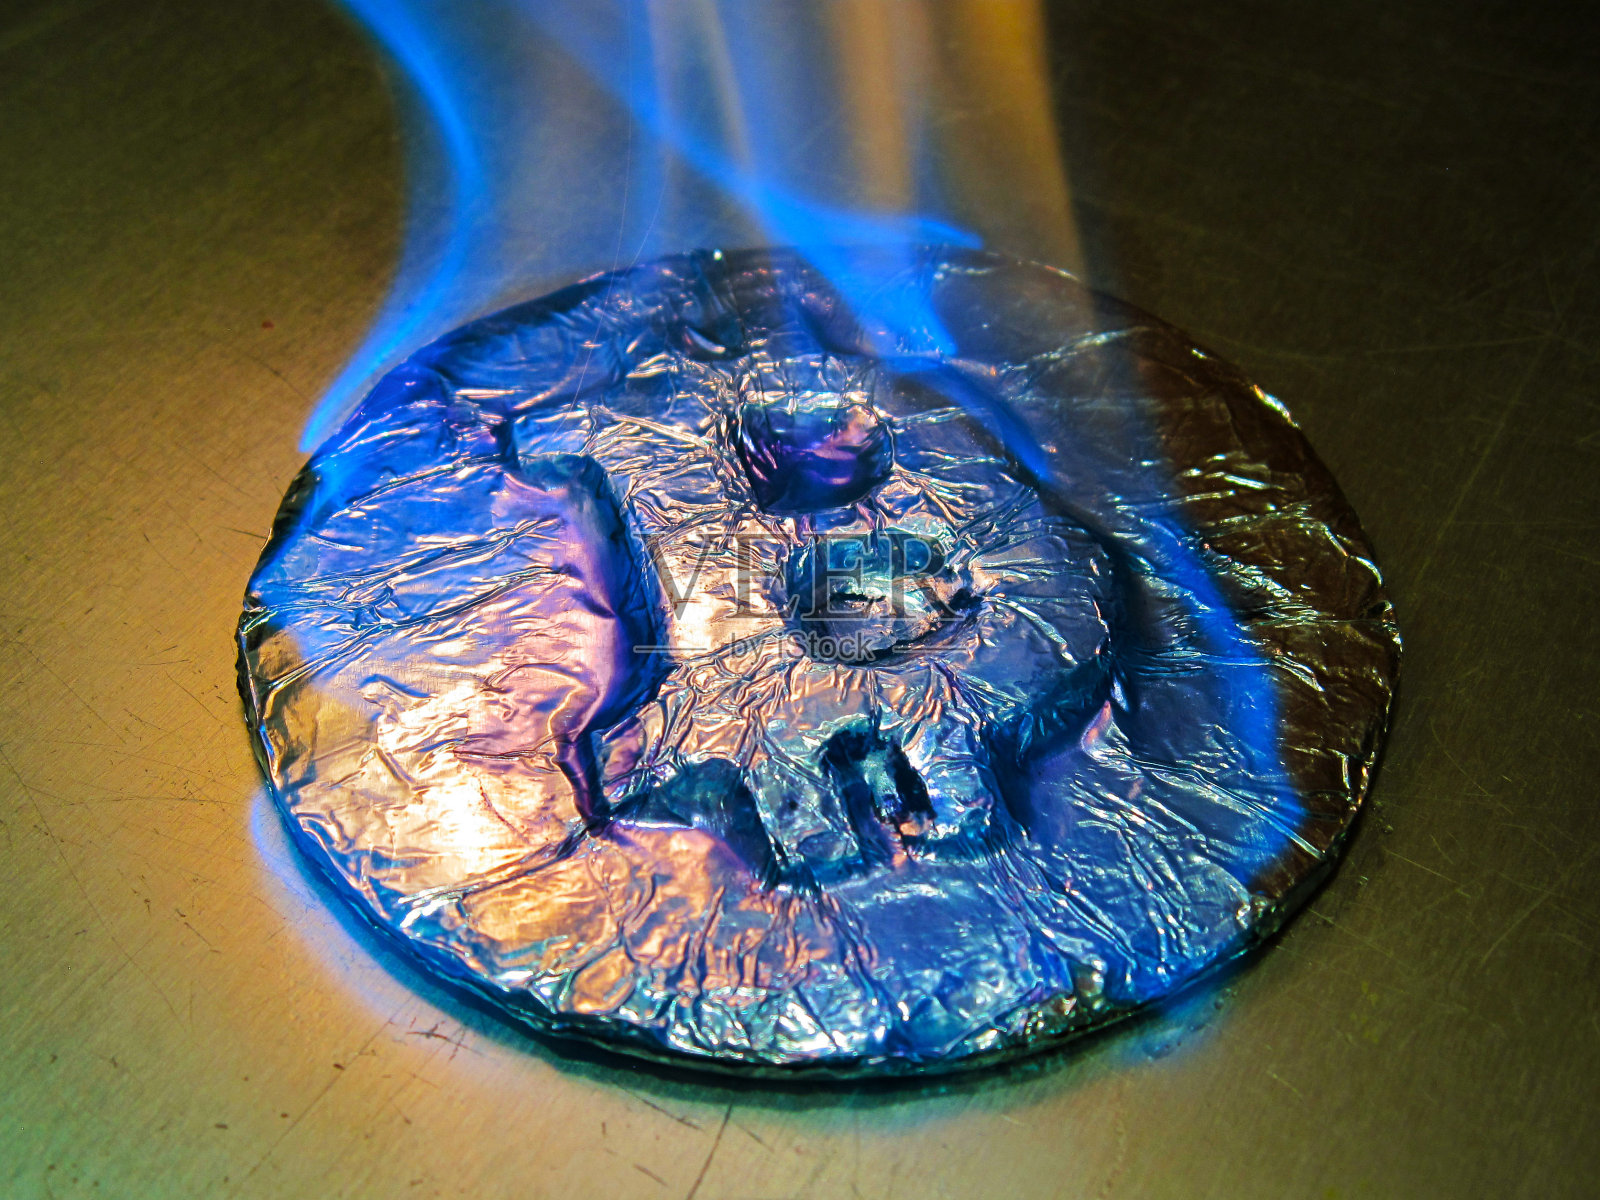 比特币着火了。真正的硬币燃烧着蓝色的火焰，象征着价格的暴涨或临界下跌照片摄影图片